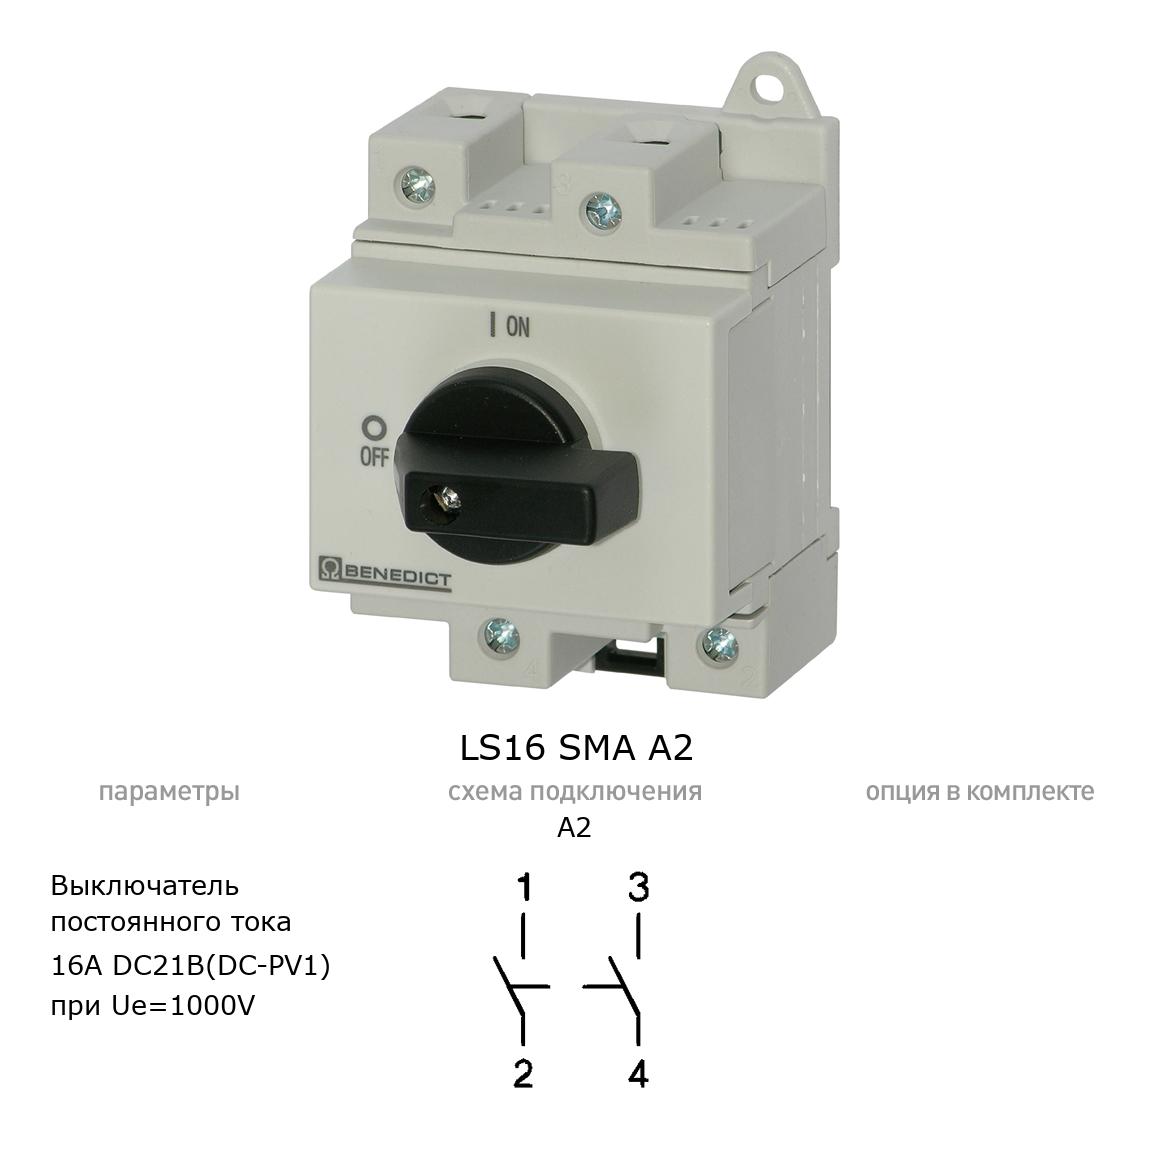 Кулачковый переключатель для постоянного тока (DC) LS16 SMA A2 BENEDICT